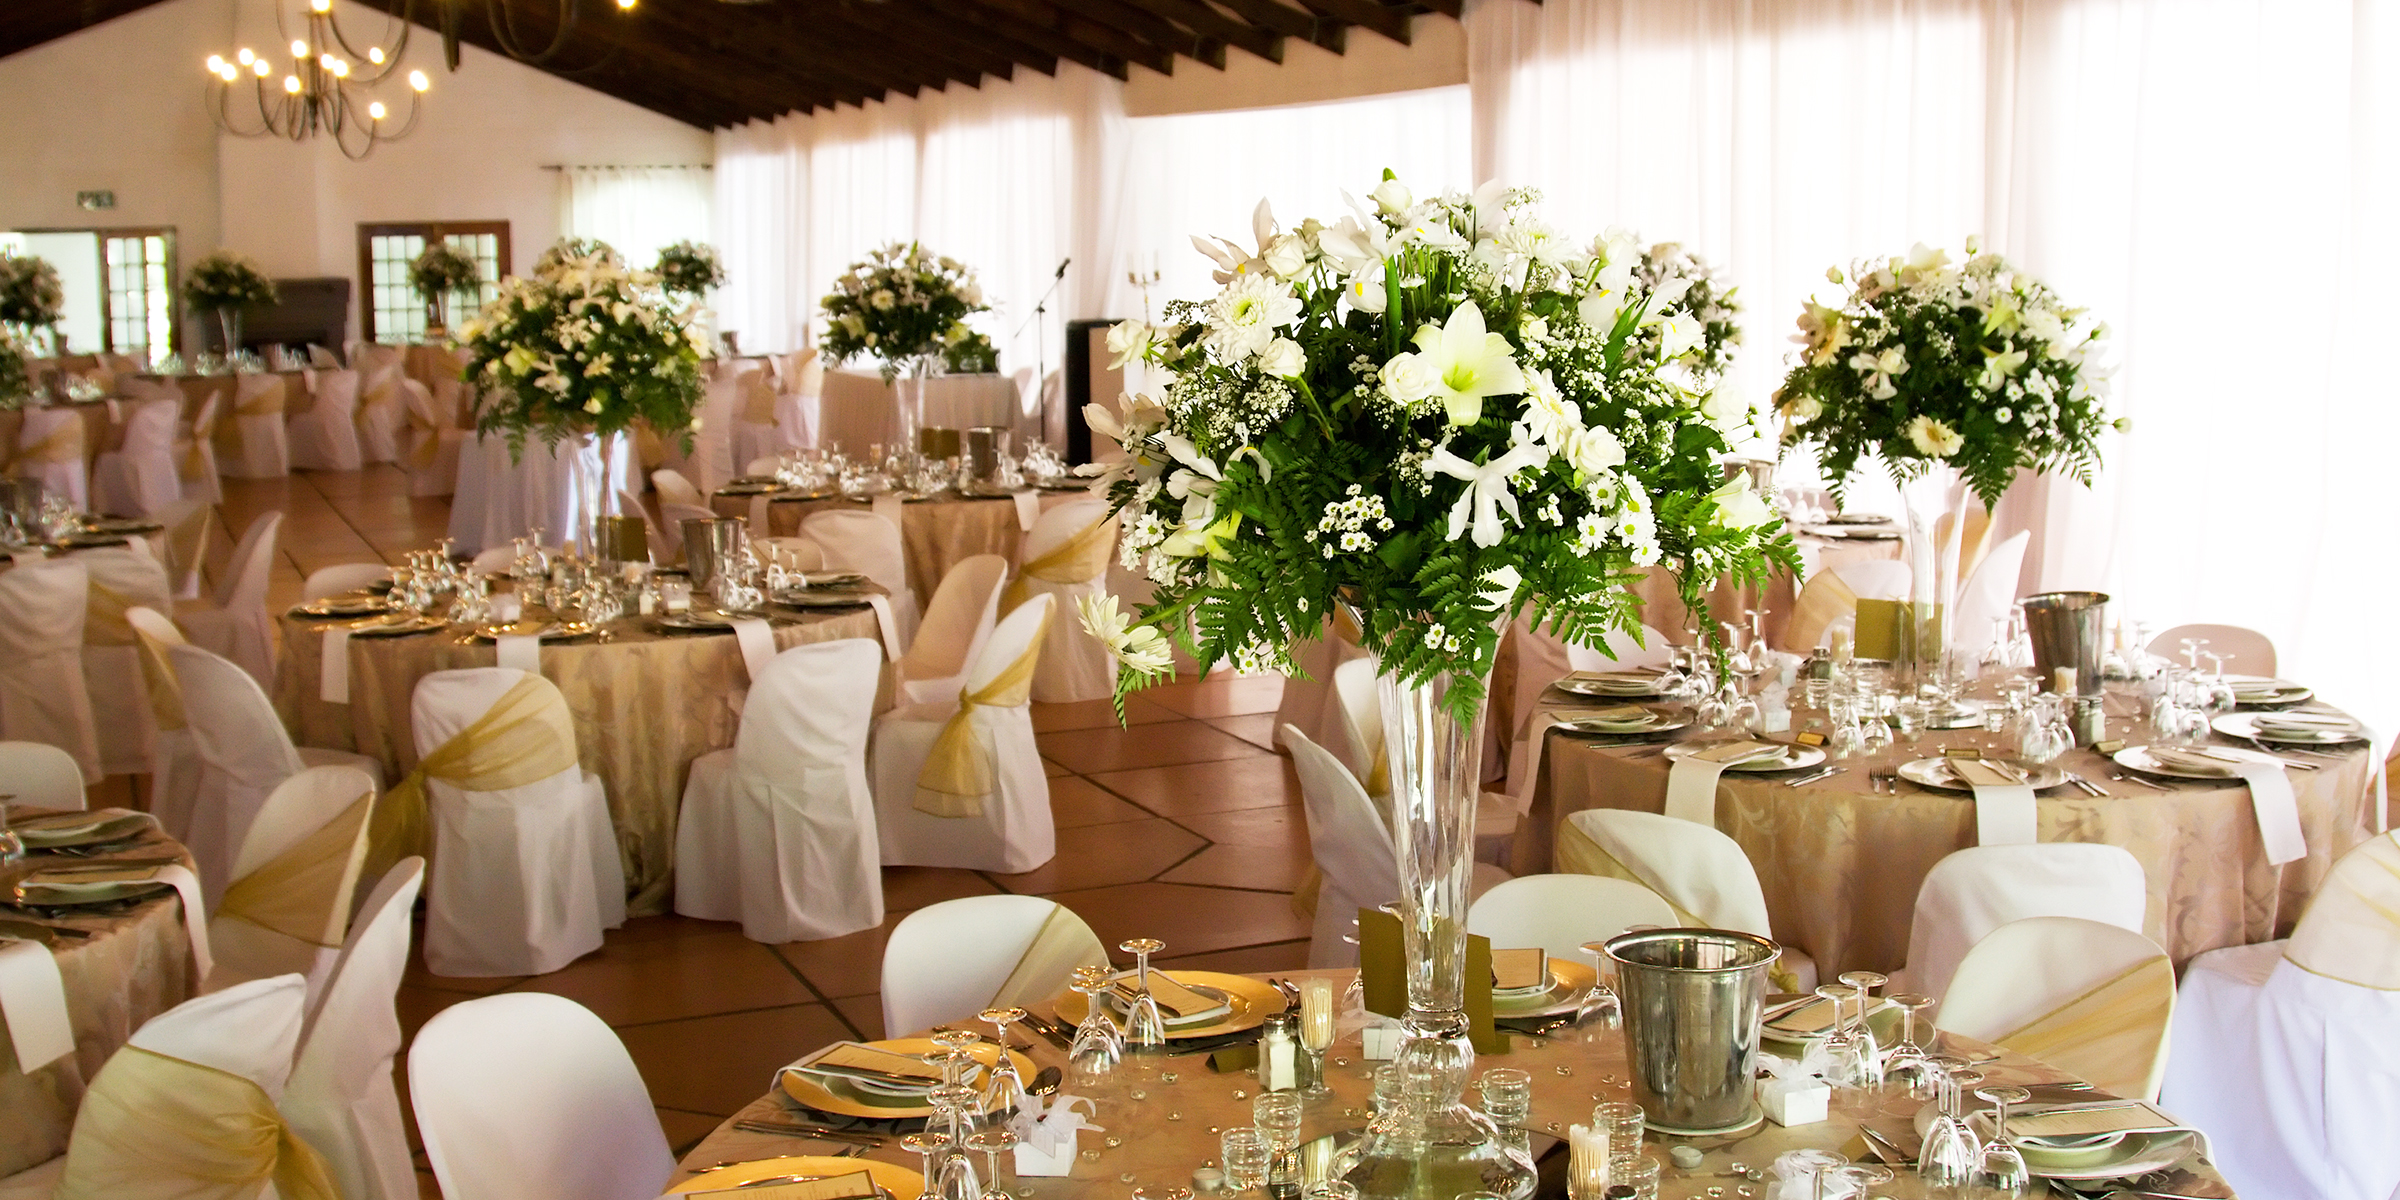 Indoor-Hochzeitslocation | Quelle: Shutterstock